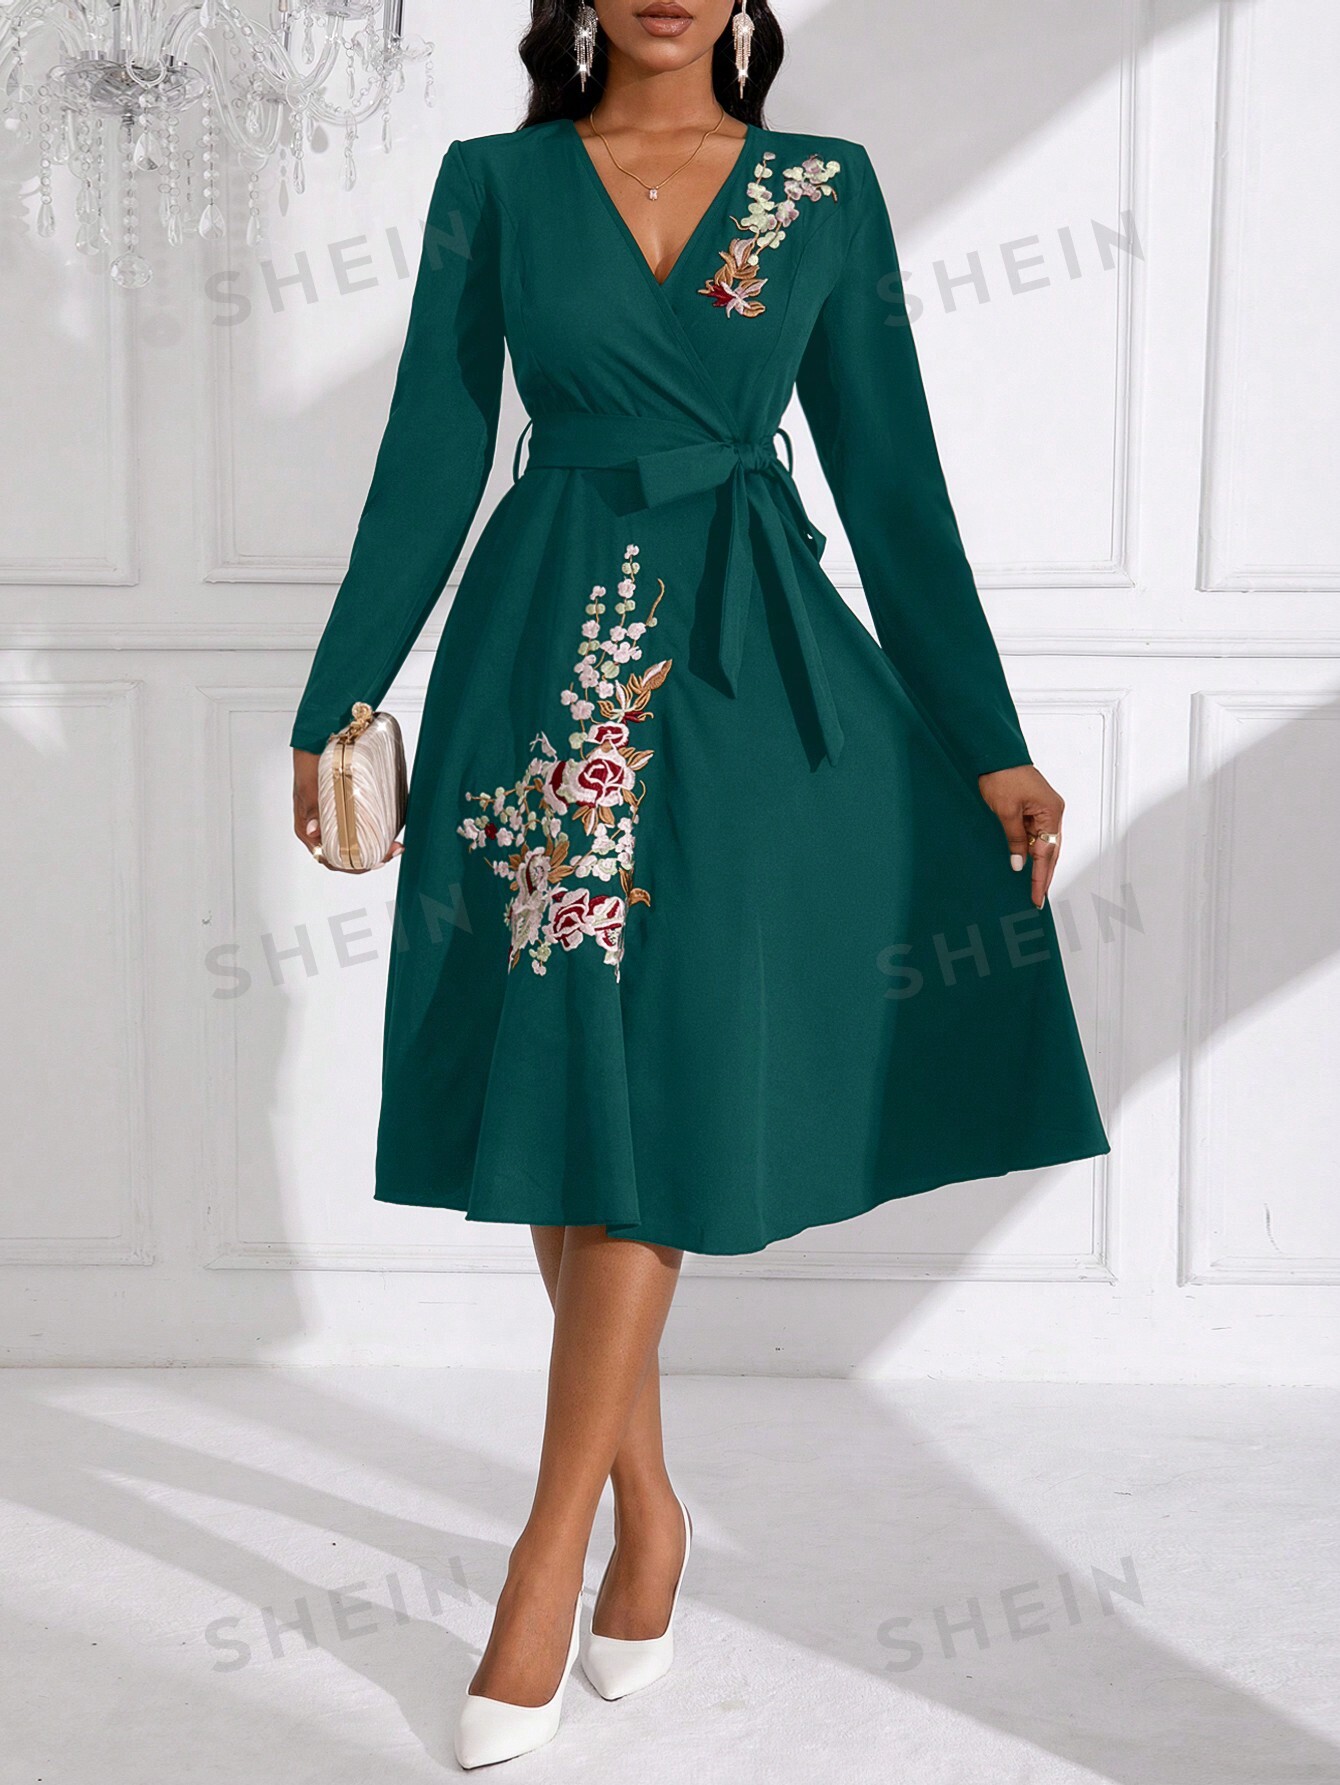 SHEIN Lady женское платье с поясом и длинными рукавами с цветочным узором, армейский зеленый